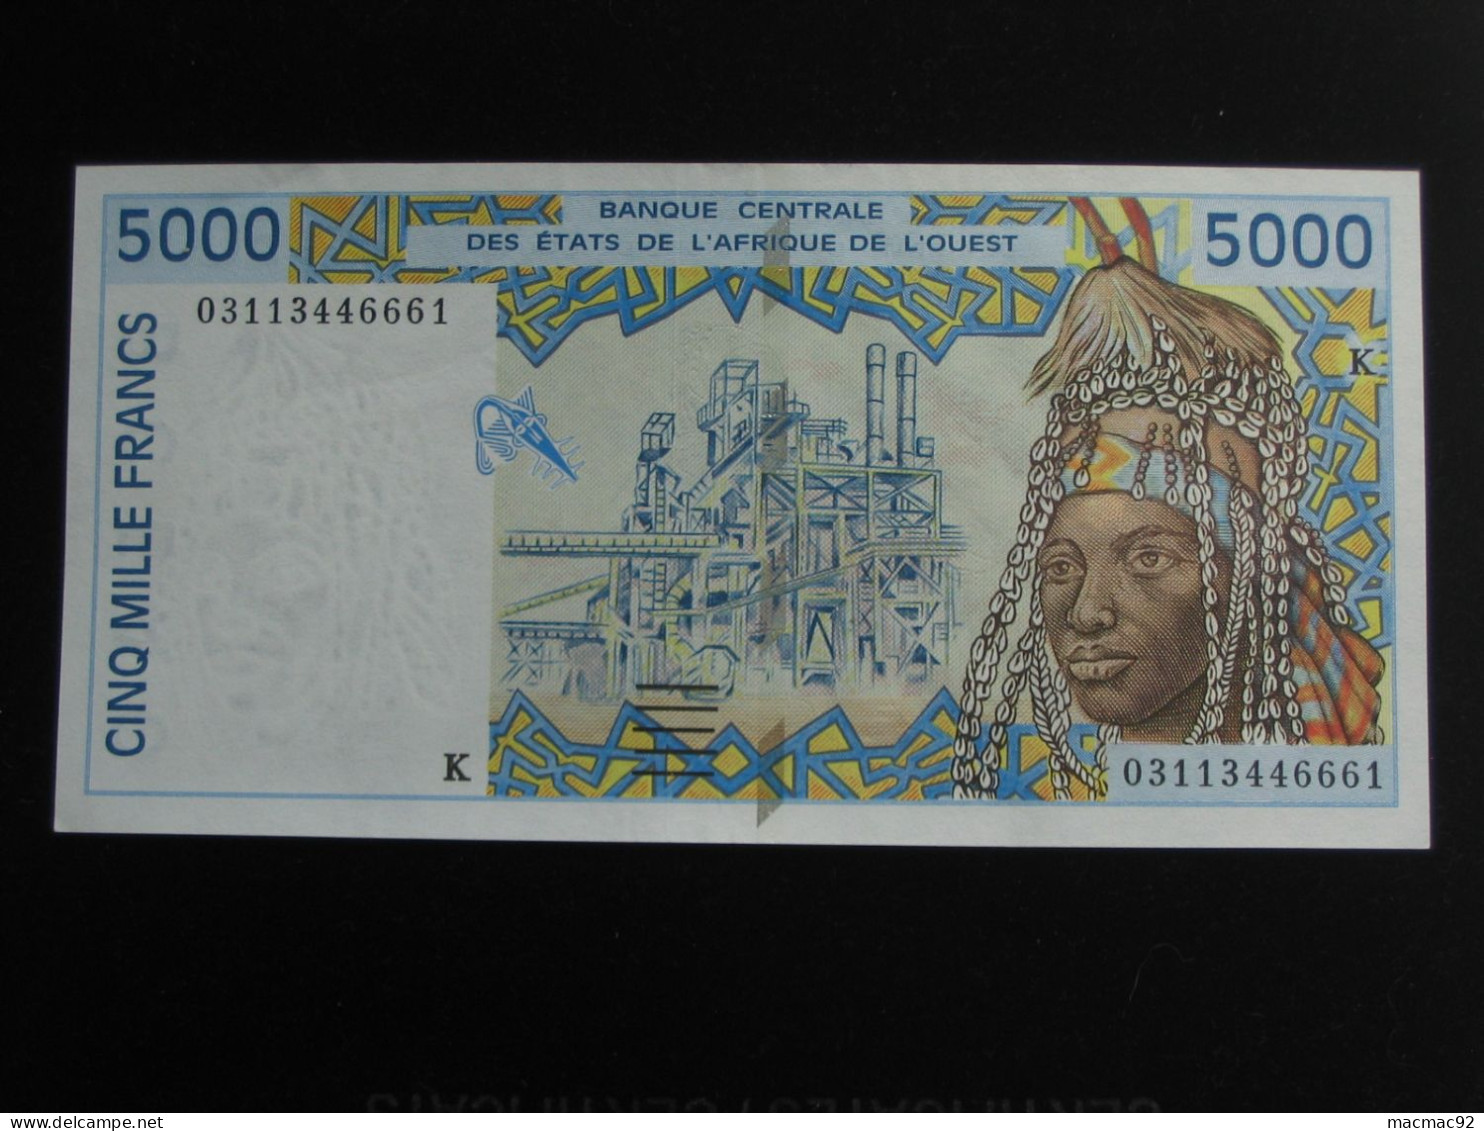 5000 Cinq Mille Francs 2002  - SENEGAL - Banque Centrale Des états De L'Afrique De L'ouest  **** EN ACHAT IMMEDIAT **** - Senegal